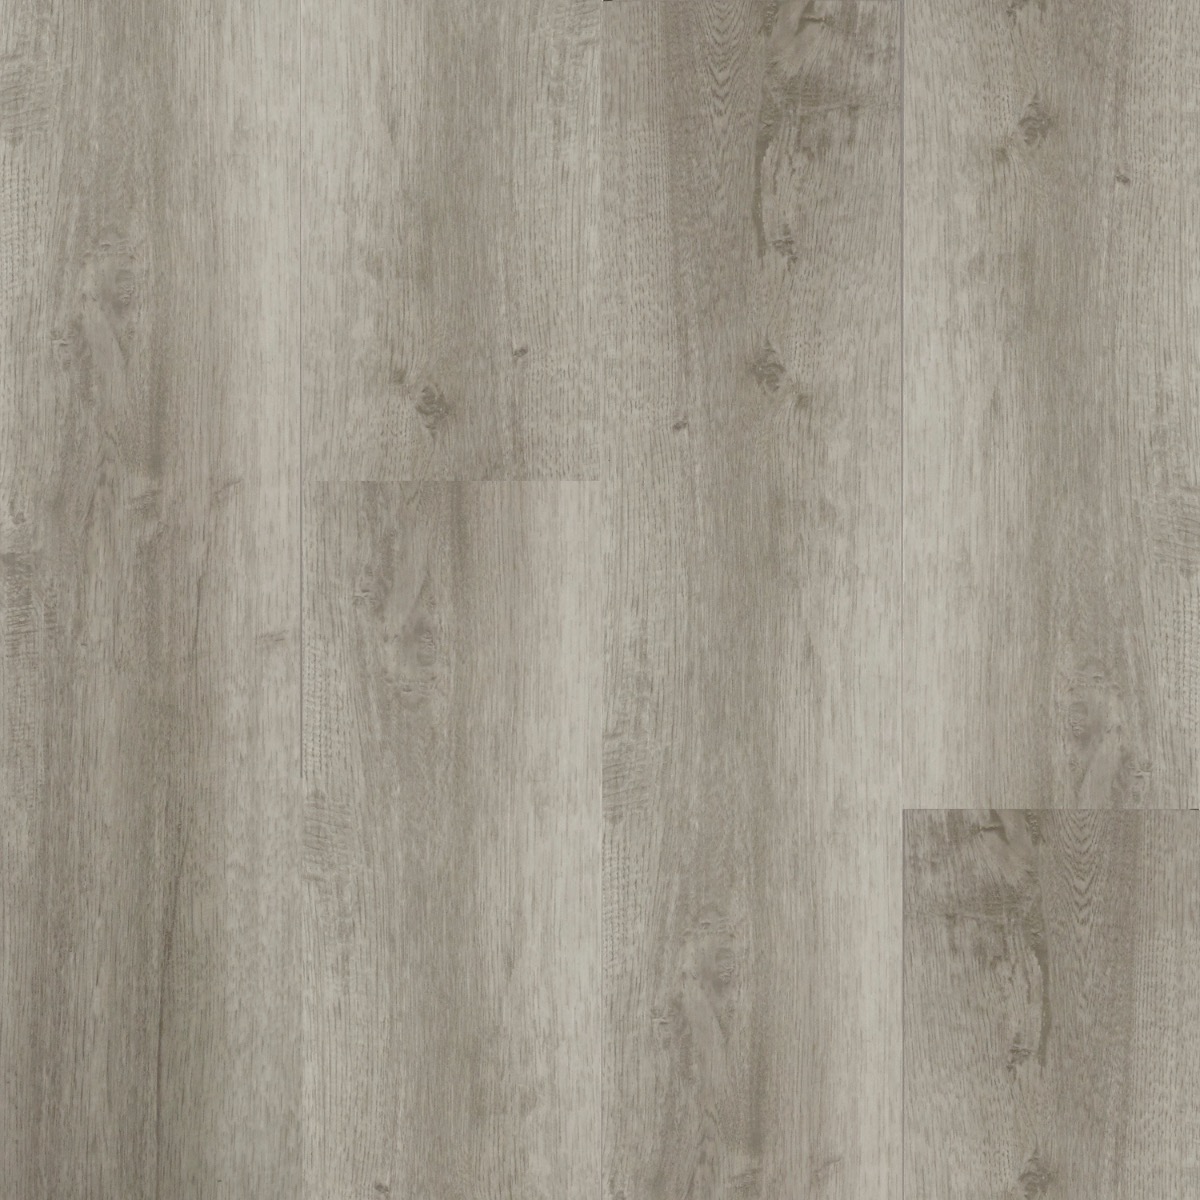 Harbor Gray Vinyl Flooring Select, Light Gray Vinyl Plank Flooring